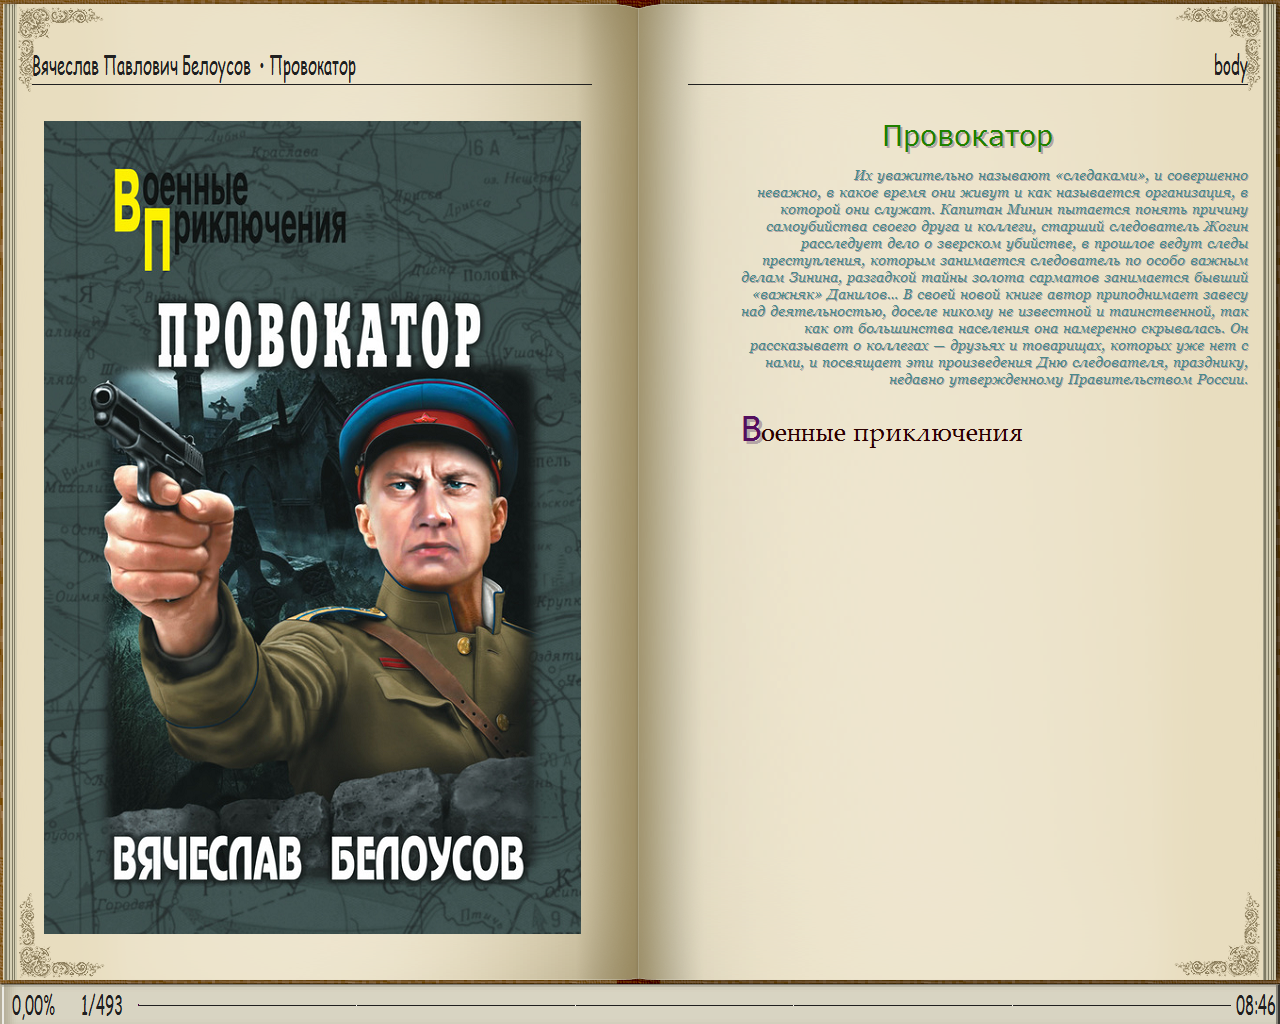 Военная книга fb2. Военные приключения. Книги о войне. Книги в военное время.